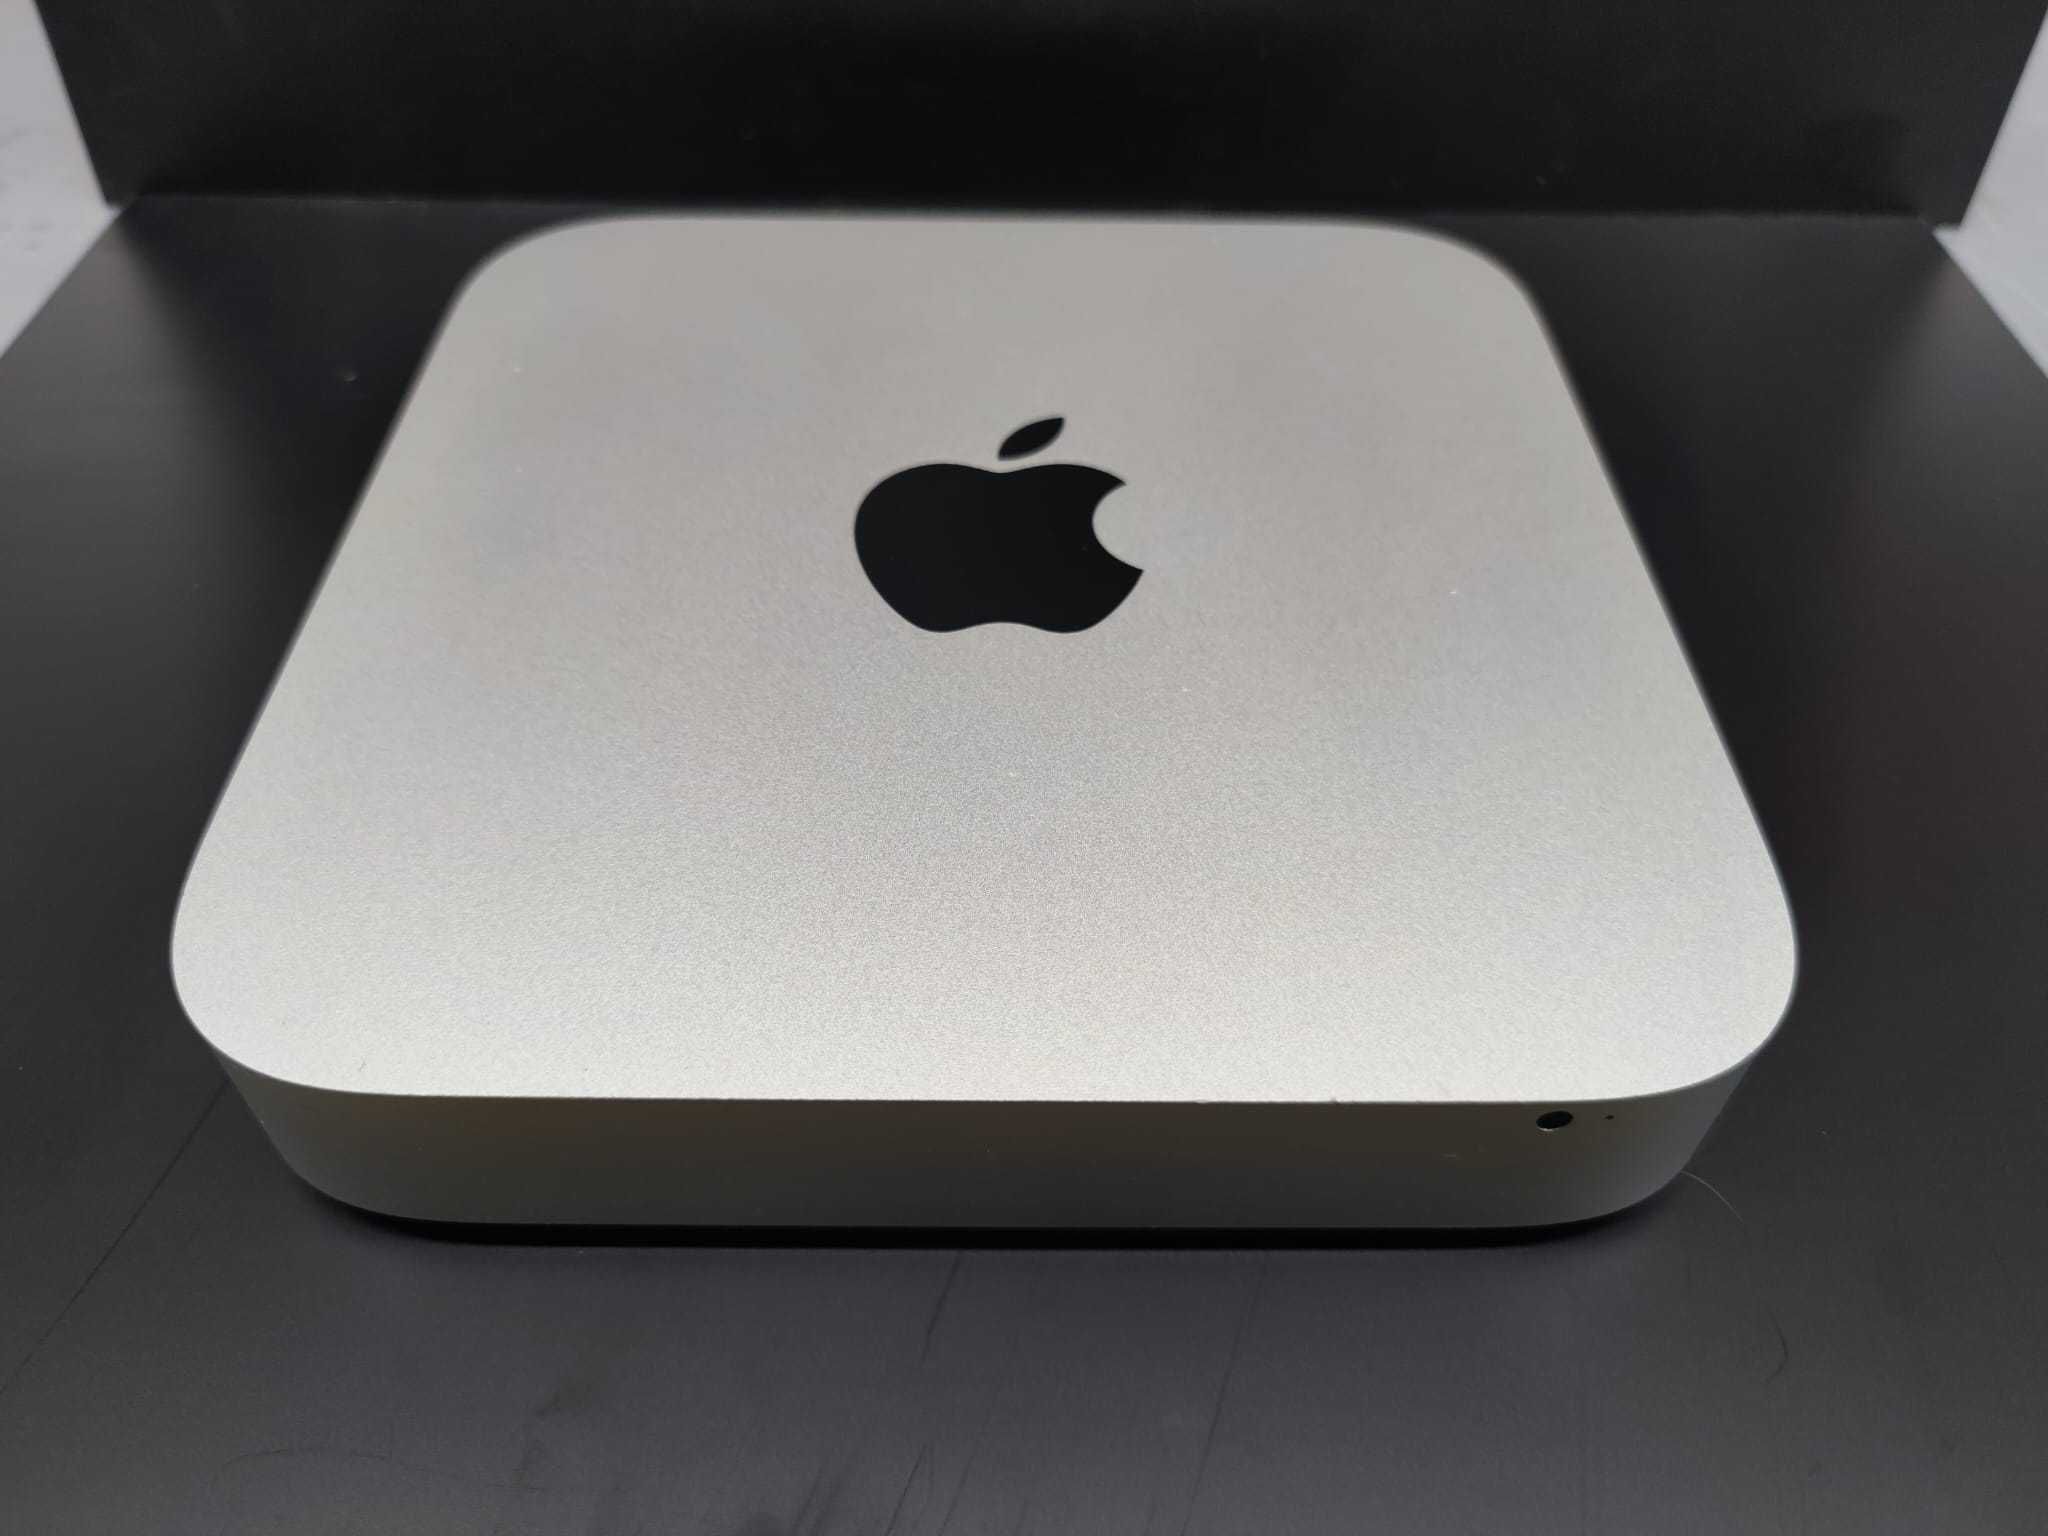 Mac mini 5,1 (mid 2011).